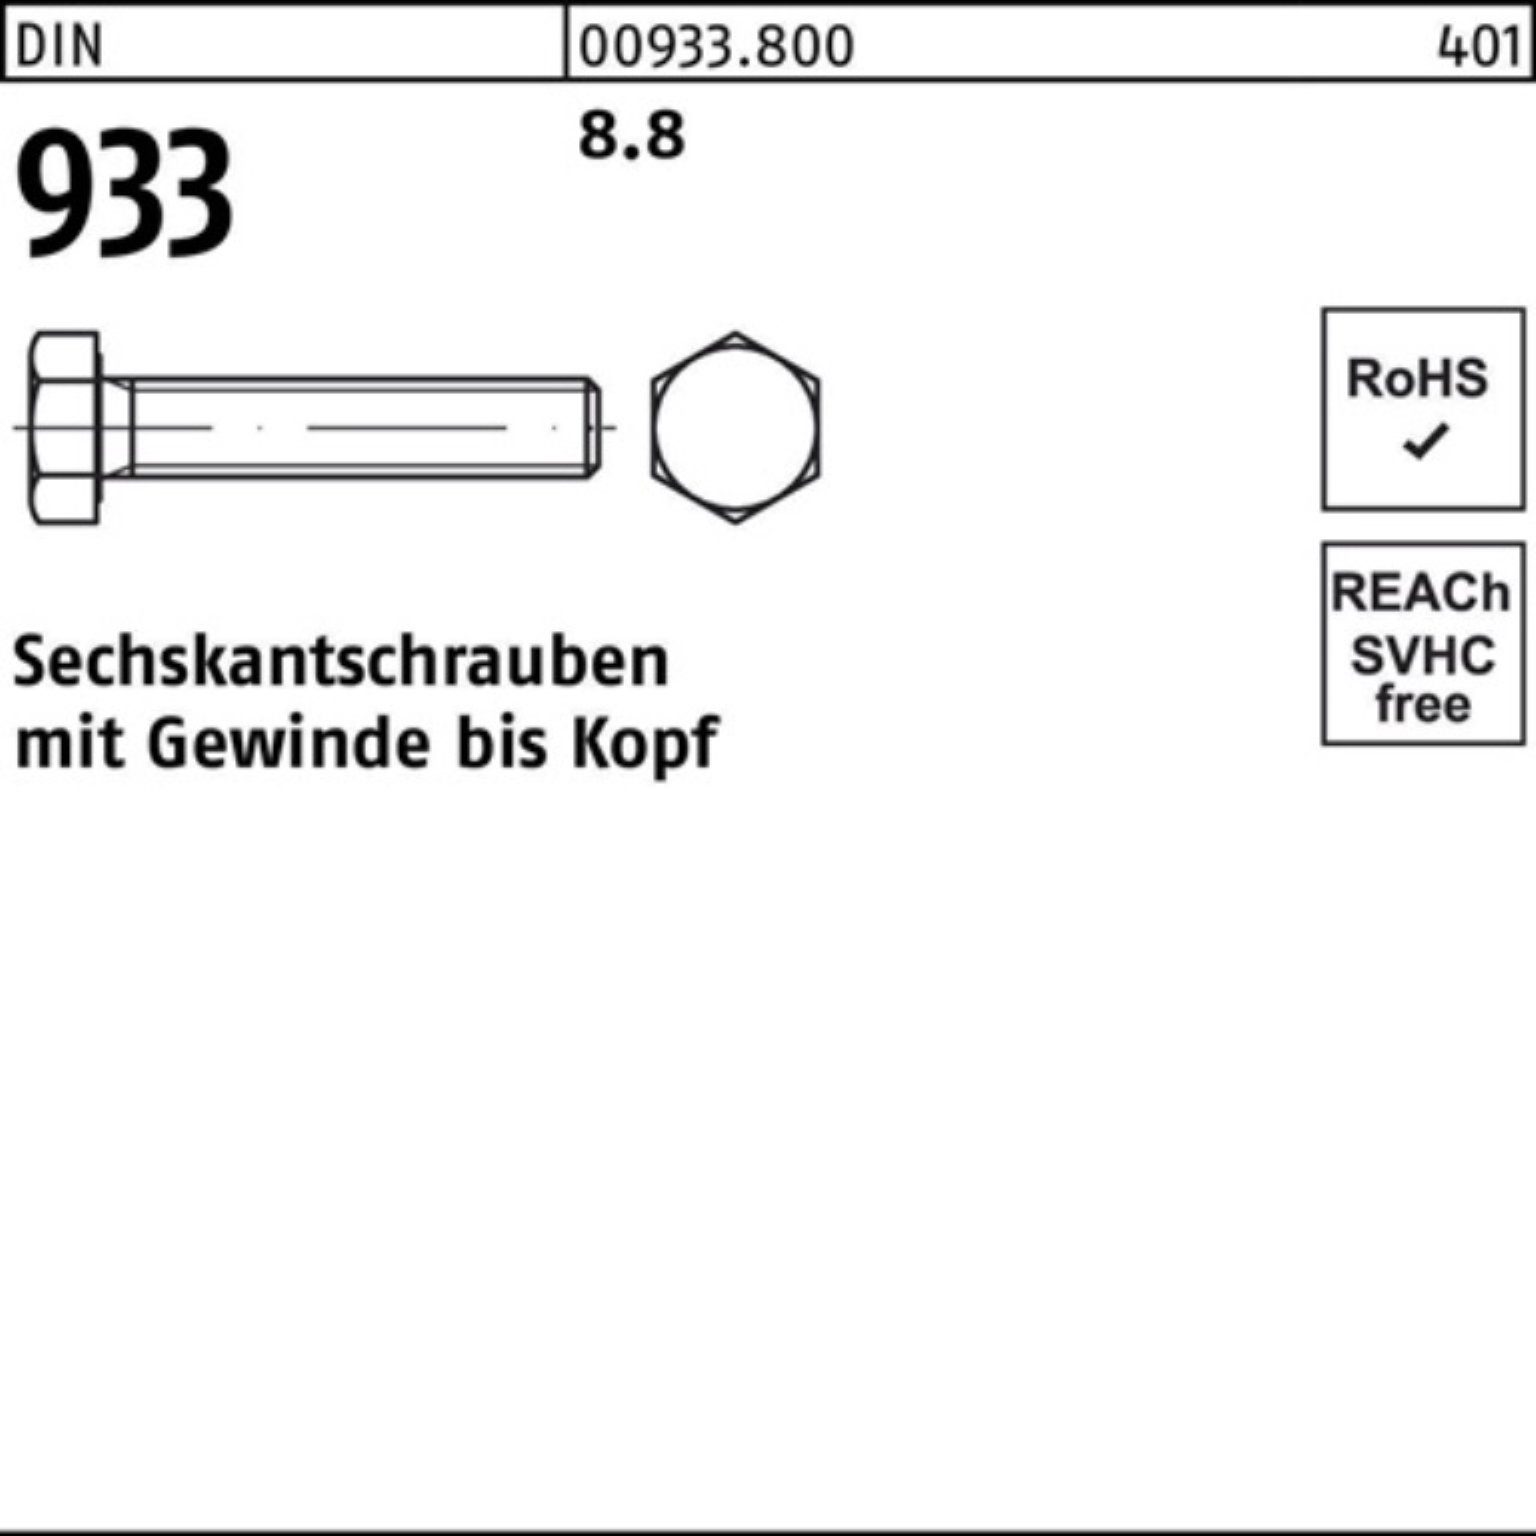 Reyher Sechskantschraube 100er Pack Sechskantschraube Stück 933 8.8 1 220 933 DIN M42x DIN VG